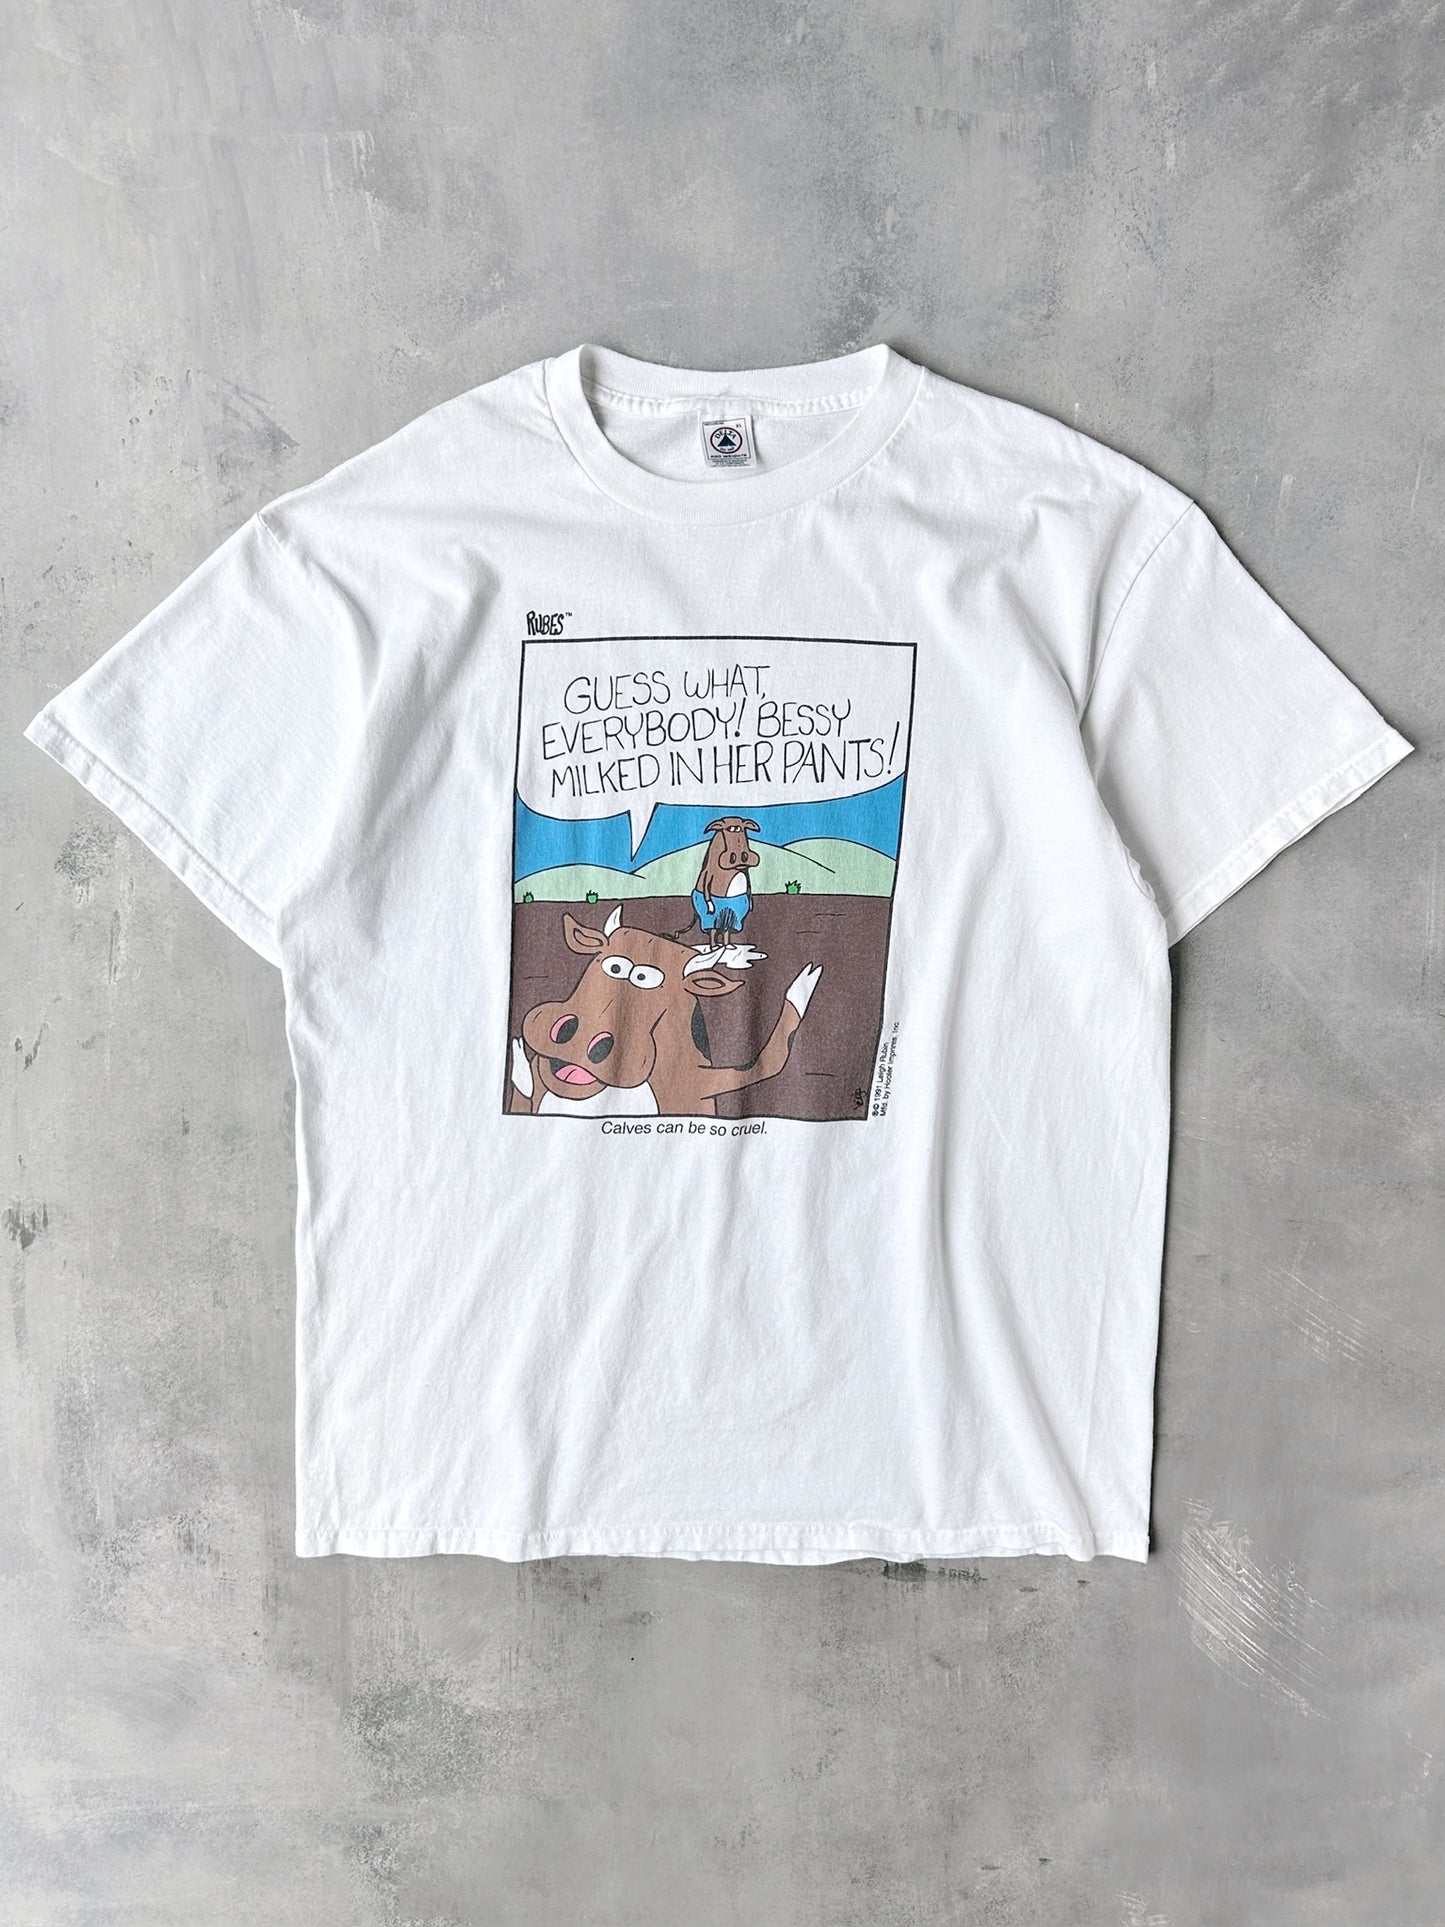 Rubes Comic T-Shirt '91 - XL